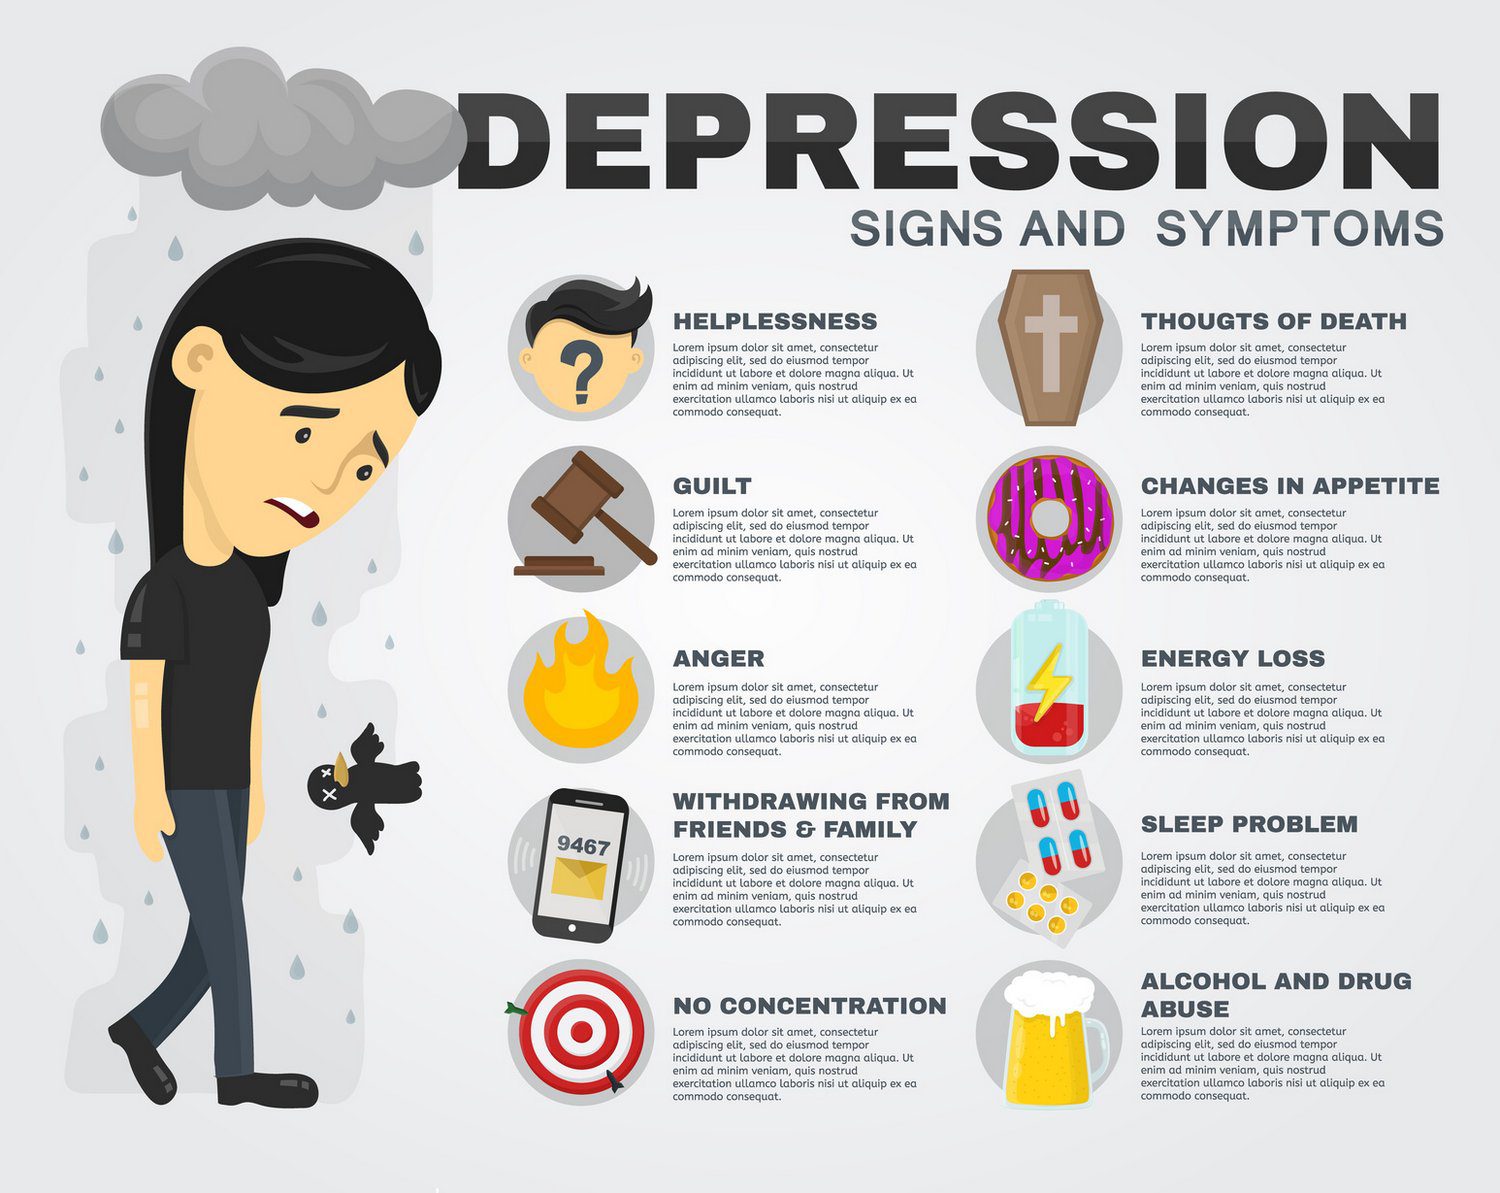 depressiv? | Symptome einer Depression in einer englischen Infografik näher erläutert (© svtdesign - stock.adobe.com)